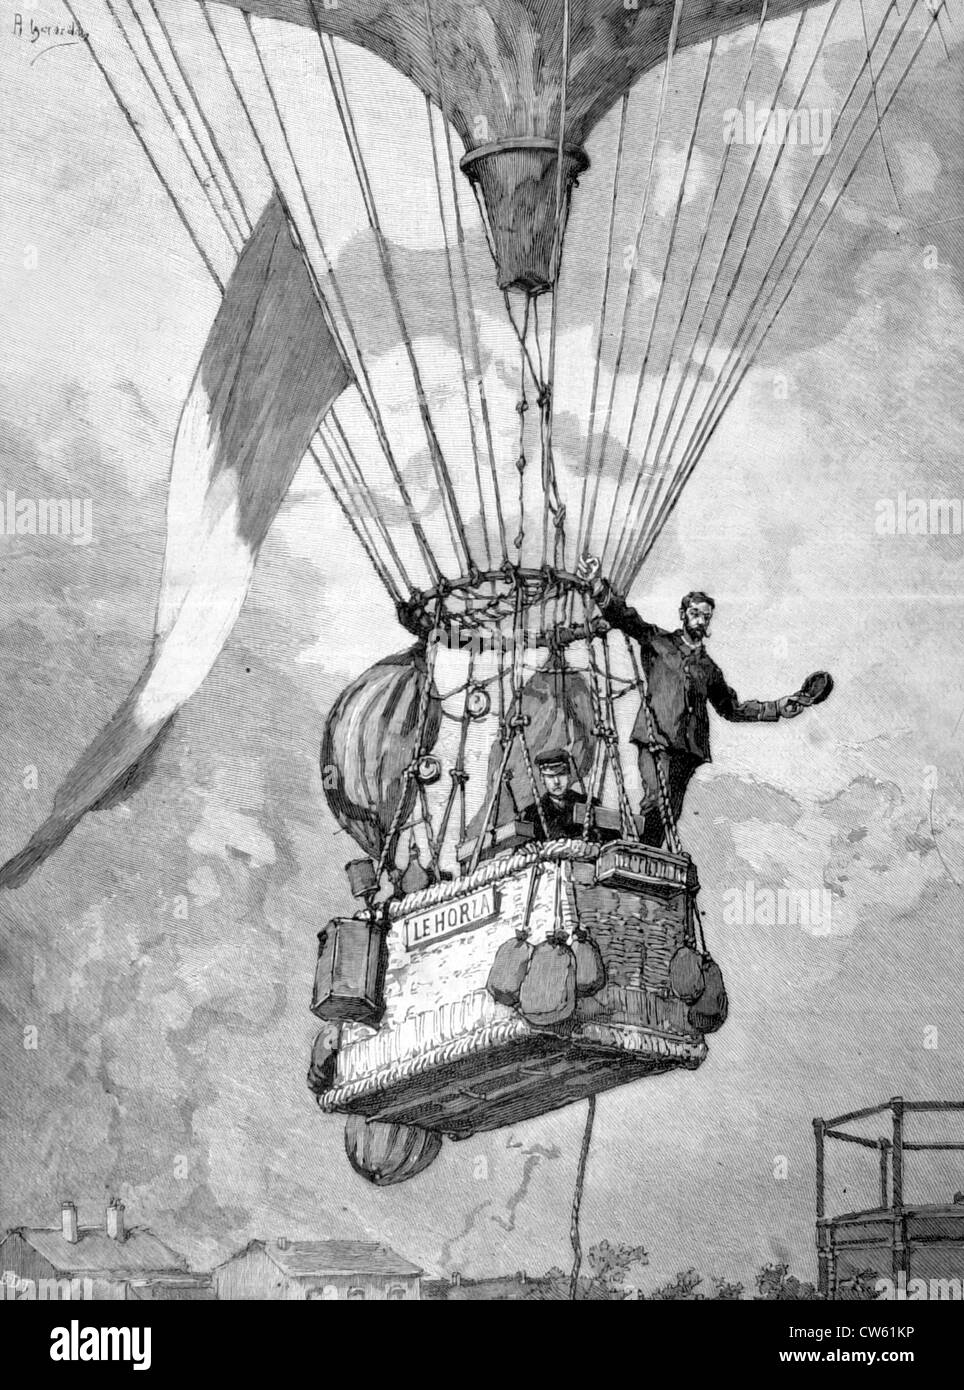 Départ de la "Horla" à Paris, piloté par MM. Jovis et Mallet, dans "Le Monde illustré", 8-20-1887 Banque D'Images